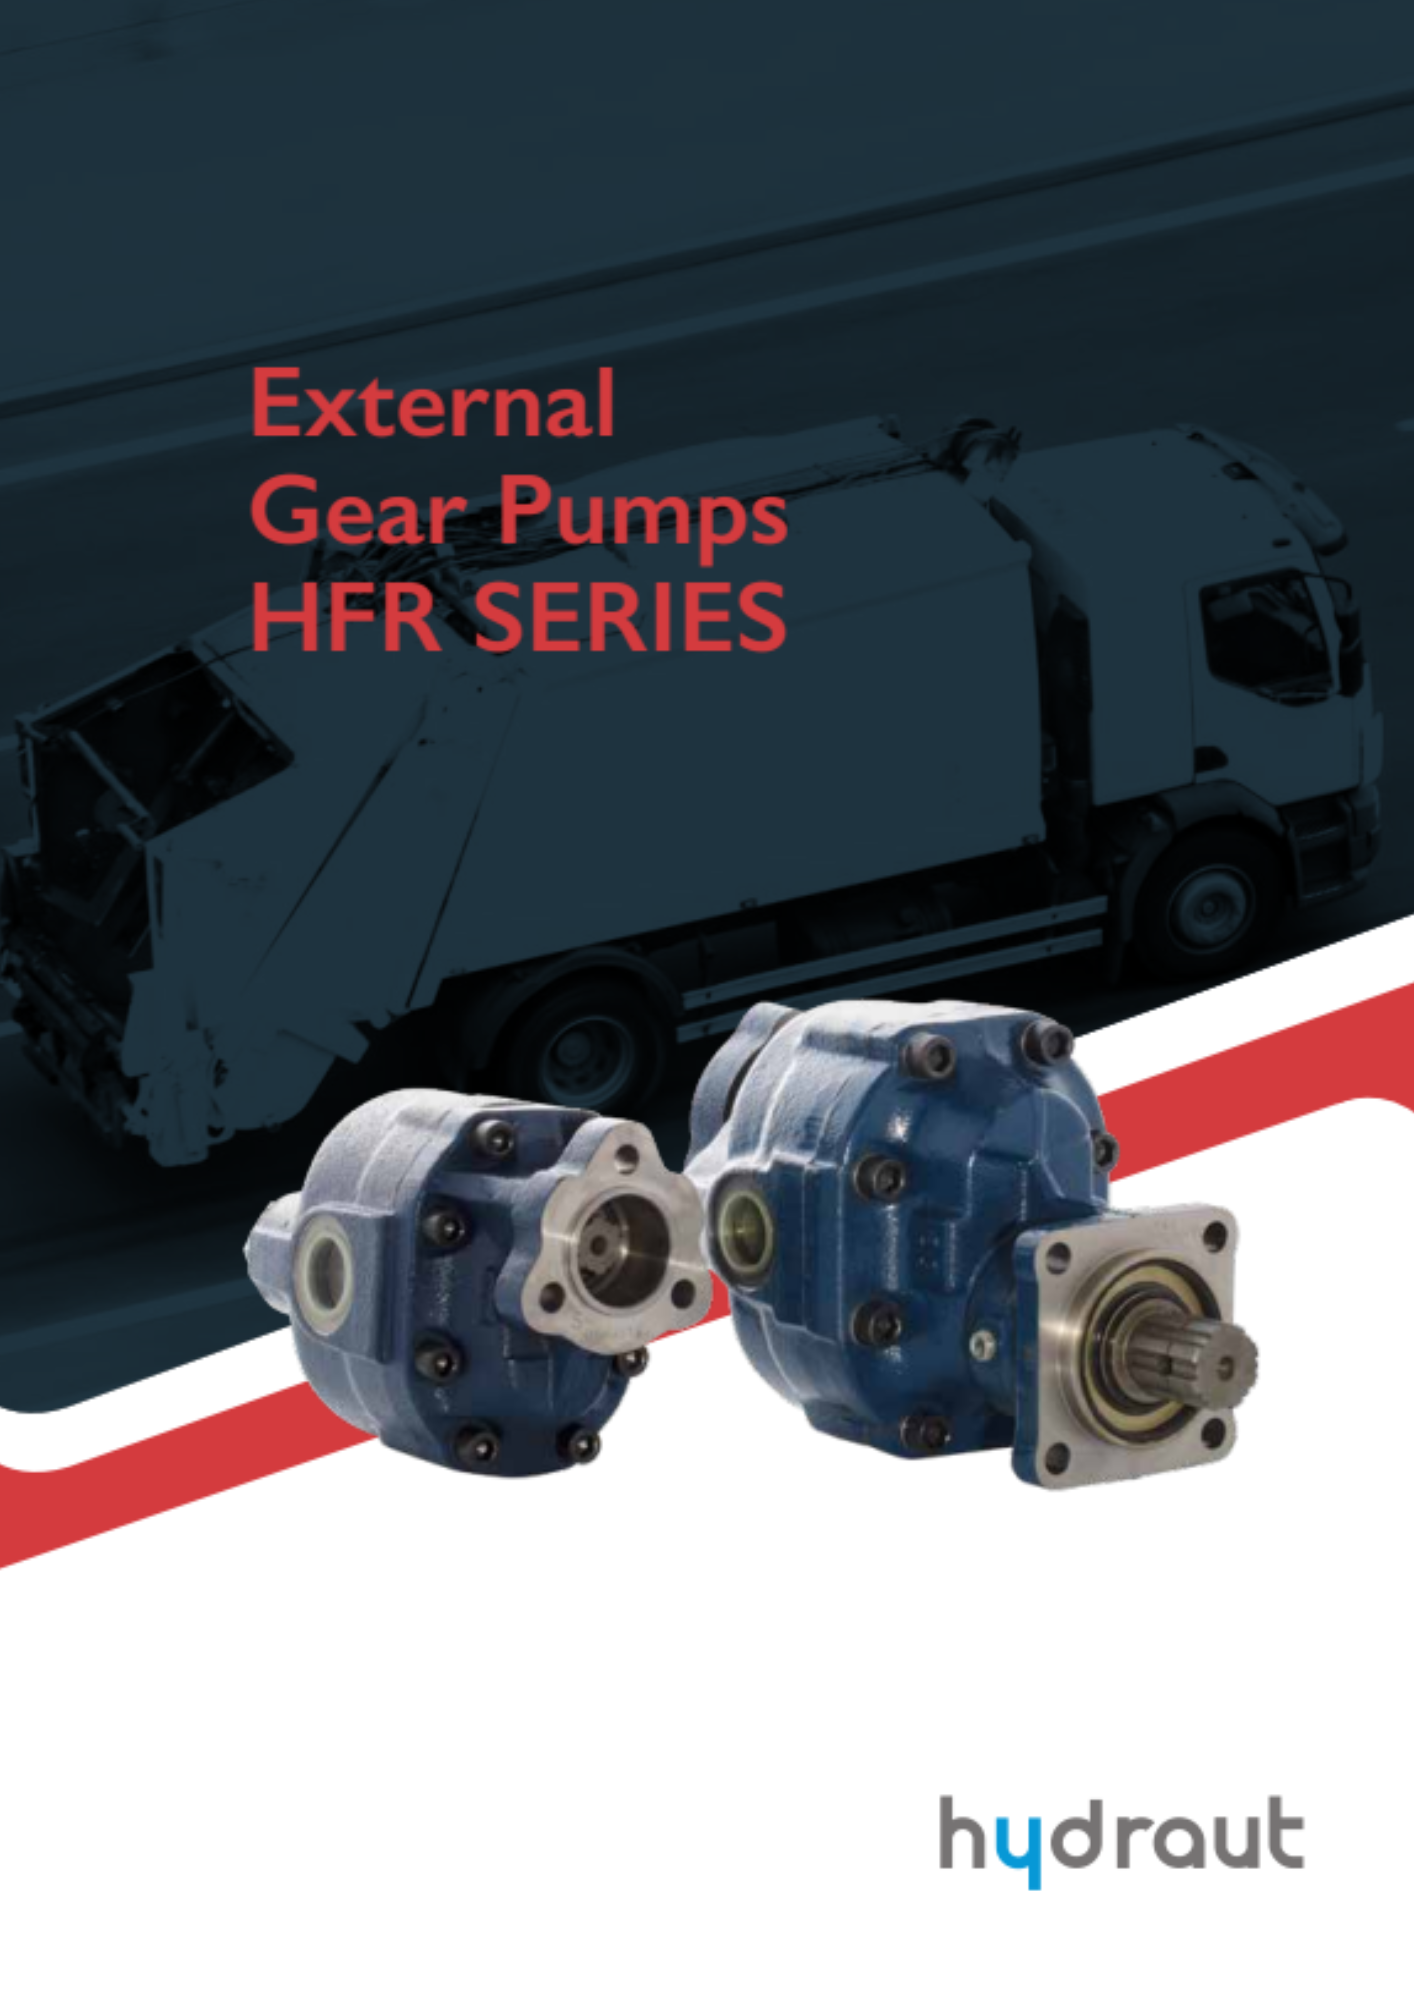 Hydraut: pompe a ingranaggi esterni HFR